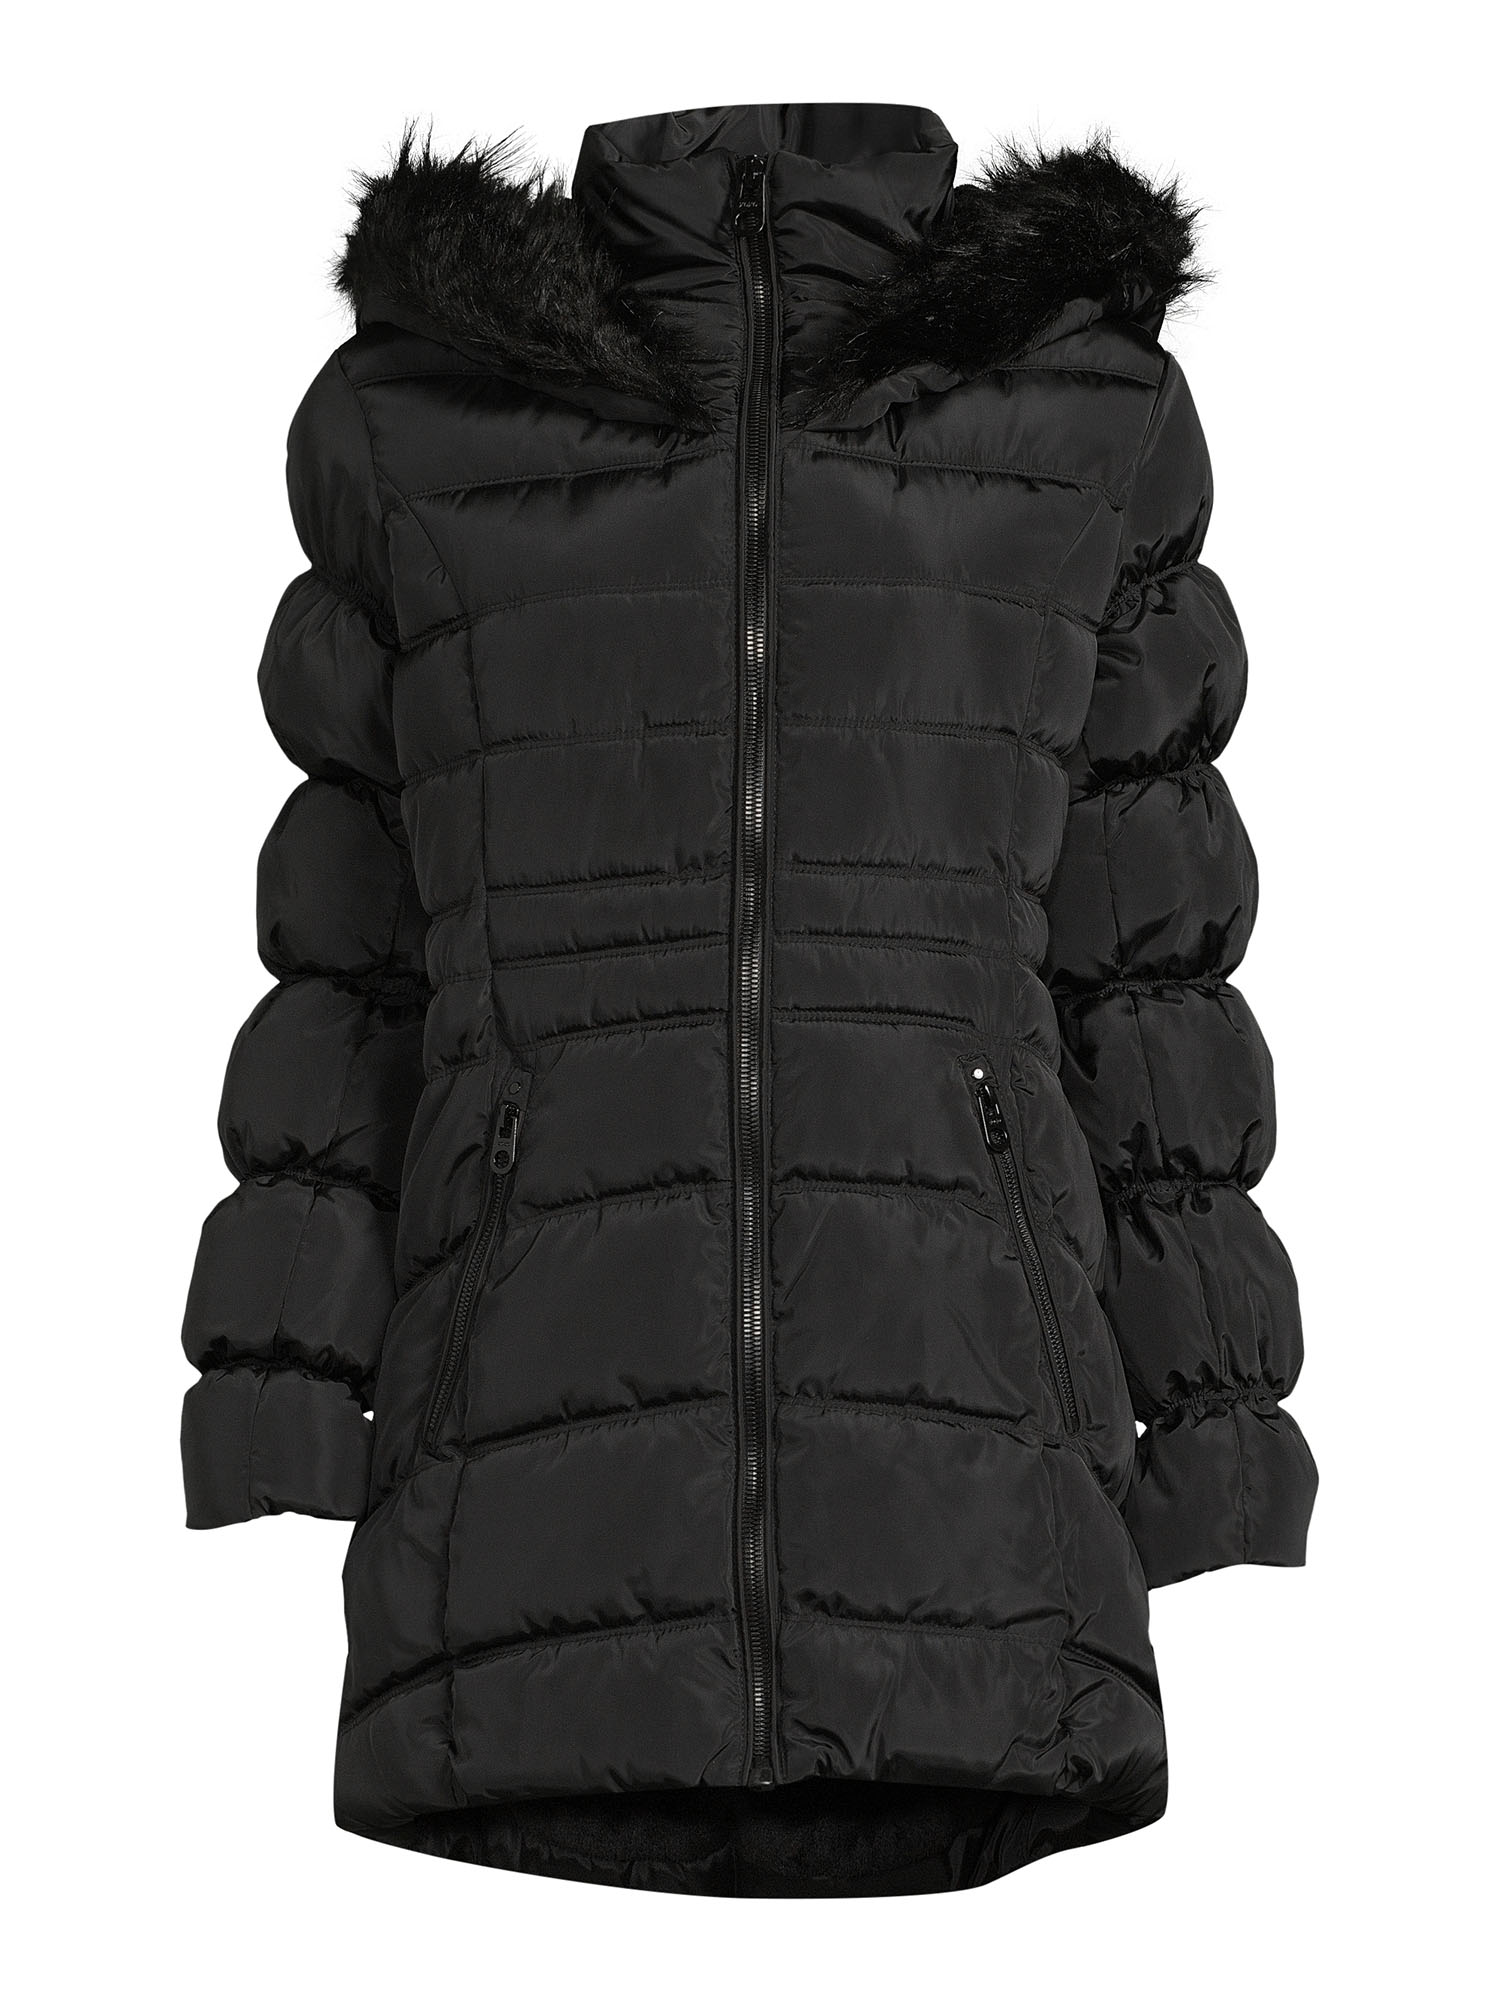 XOXO Women's Puffer Coat with Oversized Hood - image 5 of 5